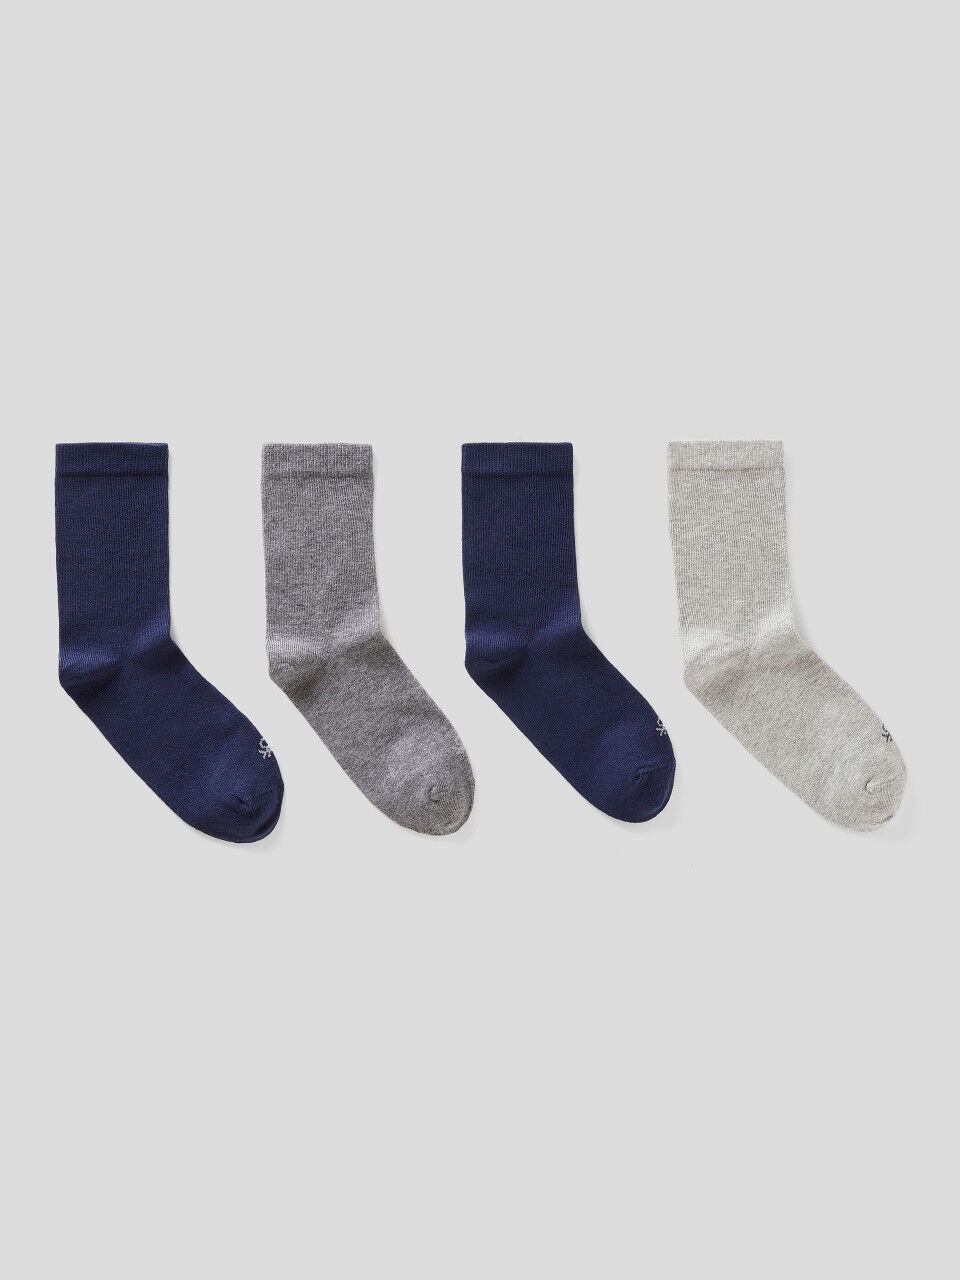 Vier Paar Socken in Grau und Blau